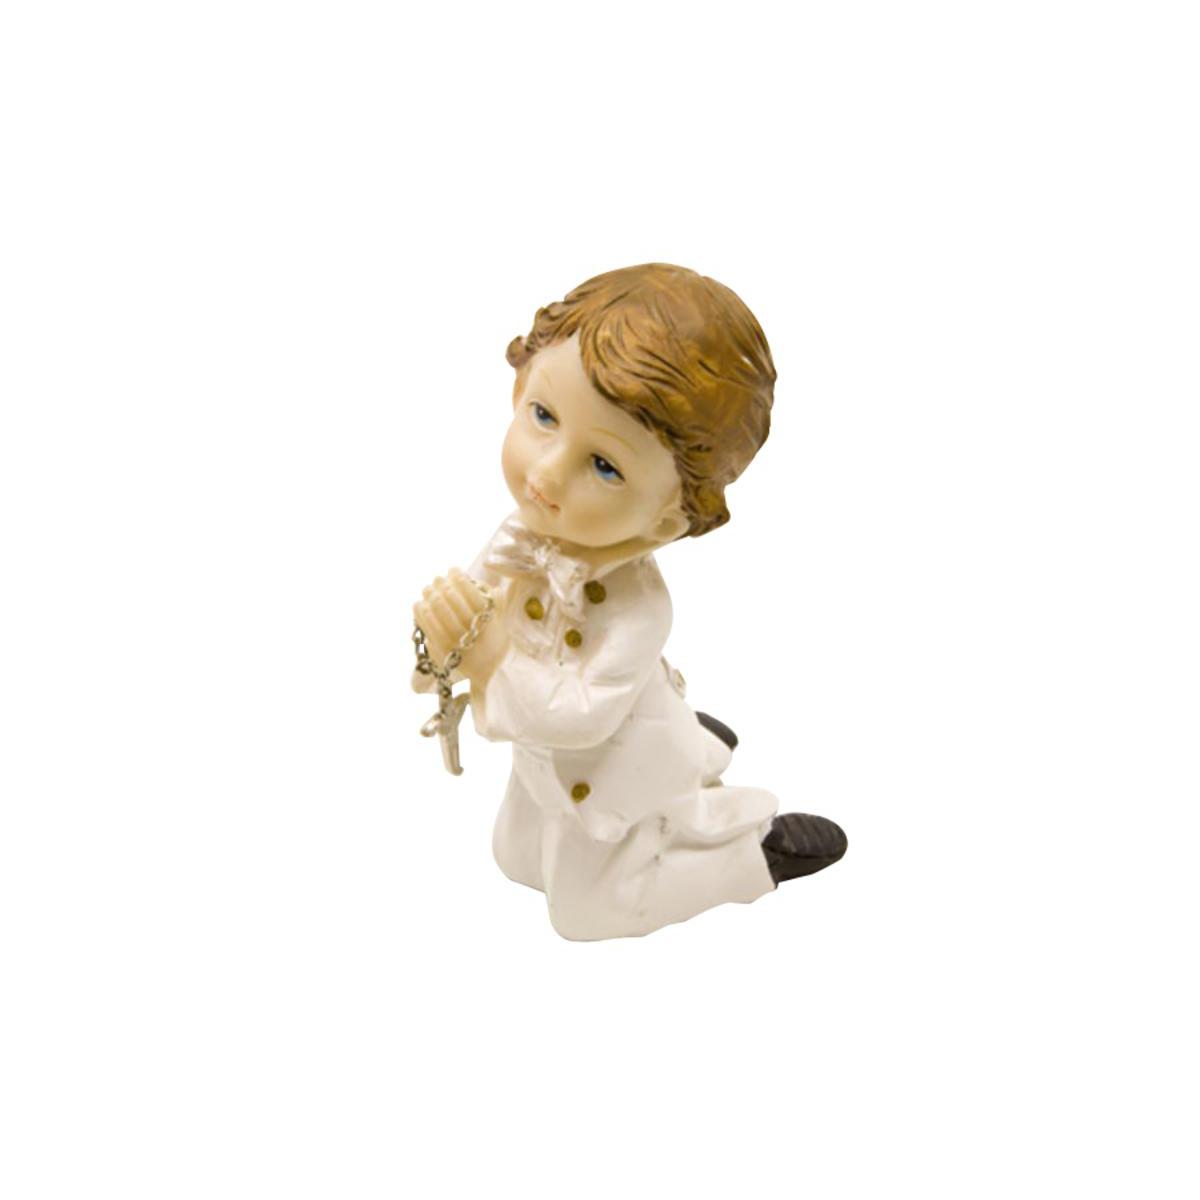 Figurine communiant agenouillé - Résine - 6 x 6 x 9,5 cm - Blanc